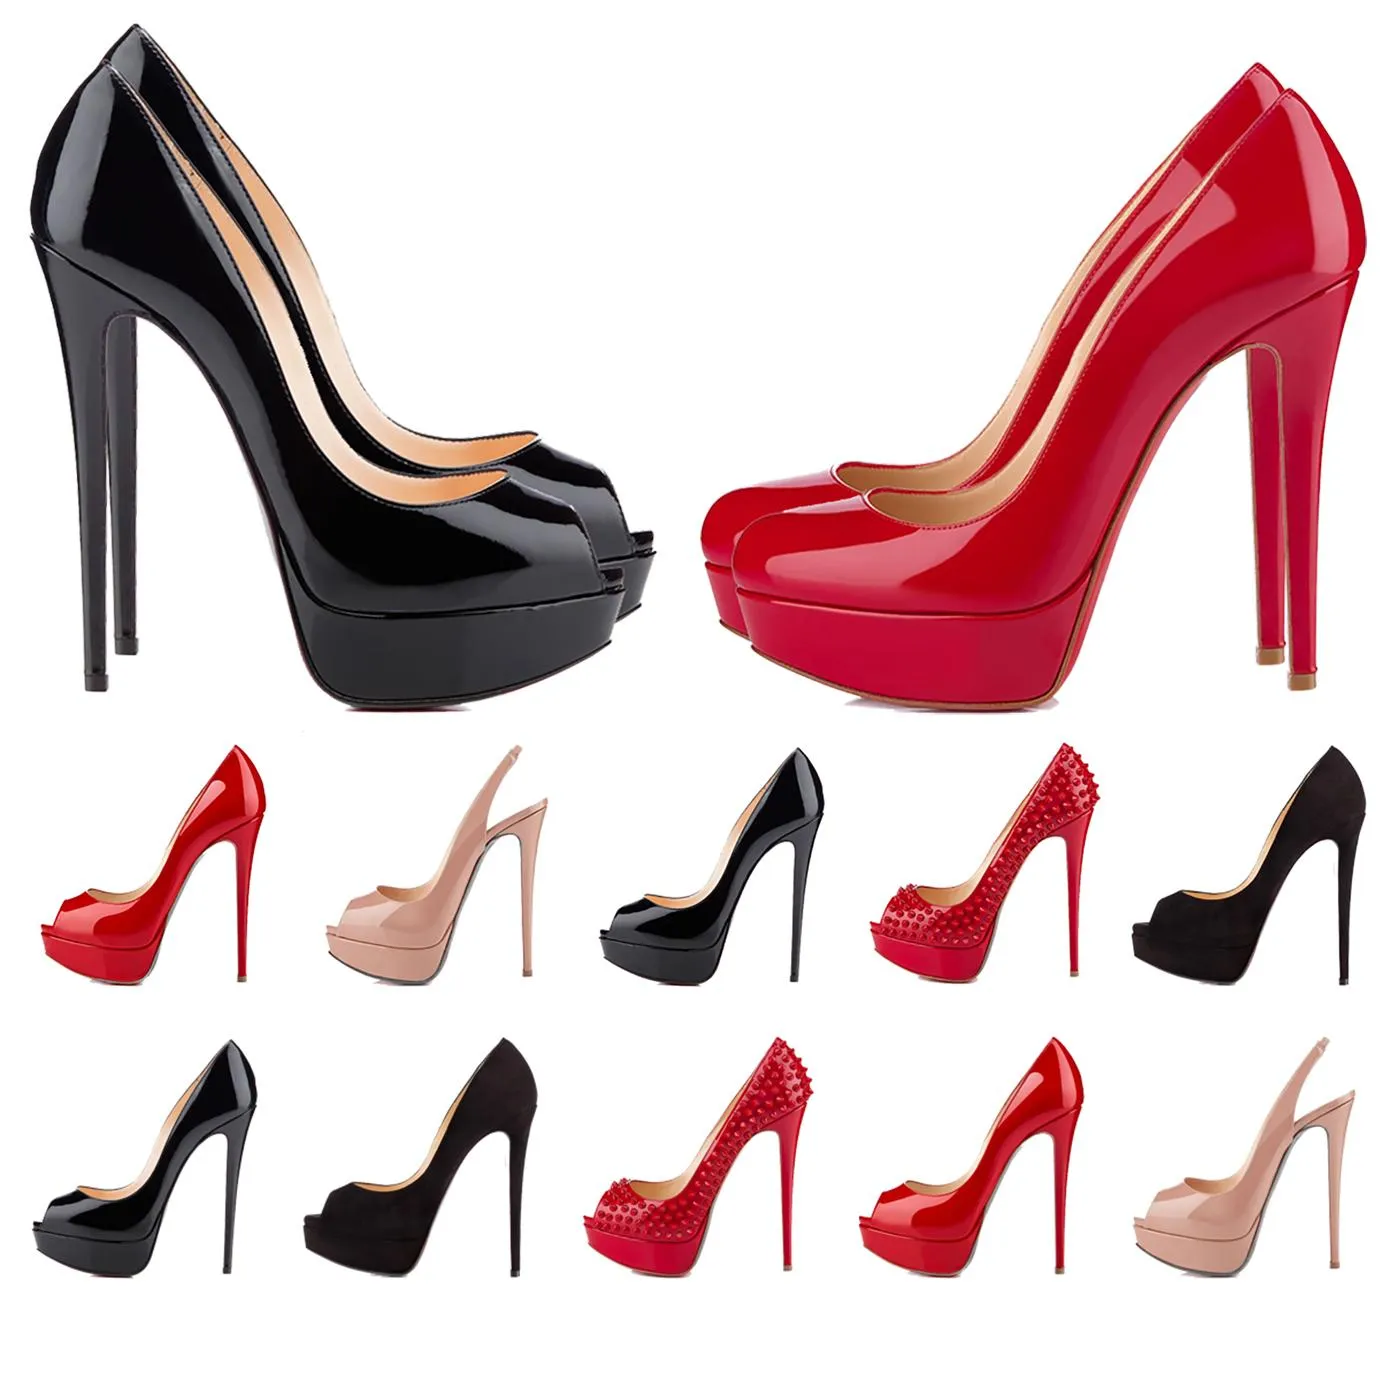 Отсуть туфли женские высокие каблуки. Плазки носки роскошные дизайнерские каблуки обувь искренняя кожа